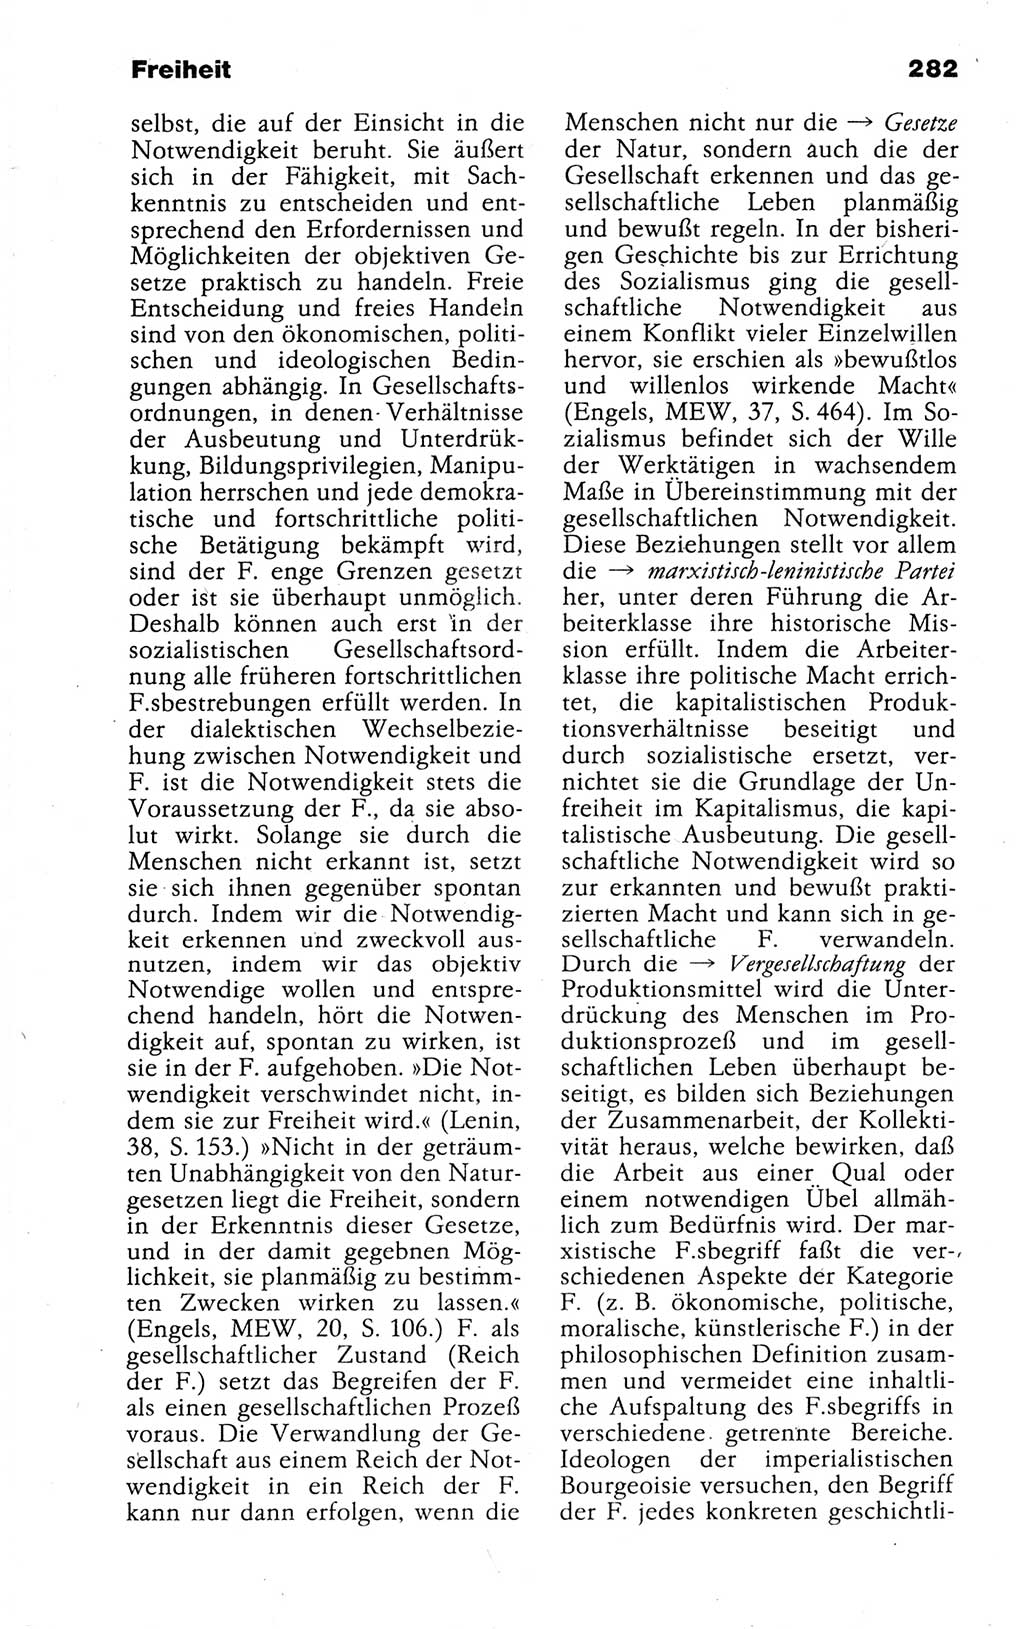 Kleines politisches Wörterbuch [Deutsche Demokratische Republik (DDR)] 1988, Seite 282 (Kl. pol. Wb. DDR 1988, S. 282)